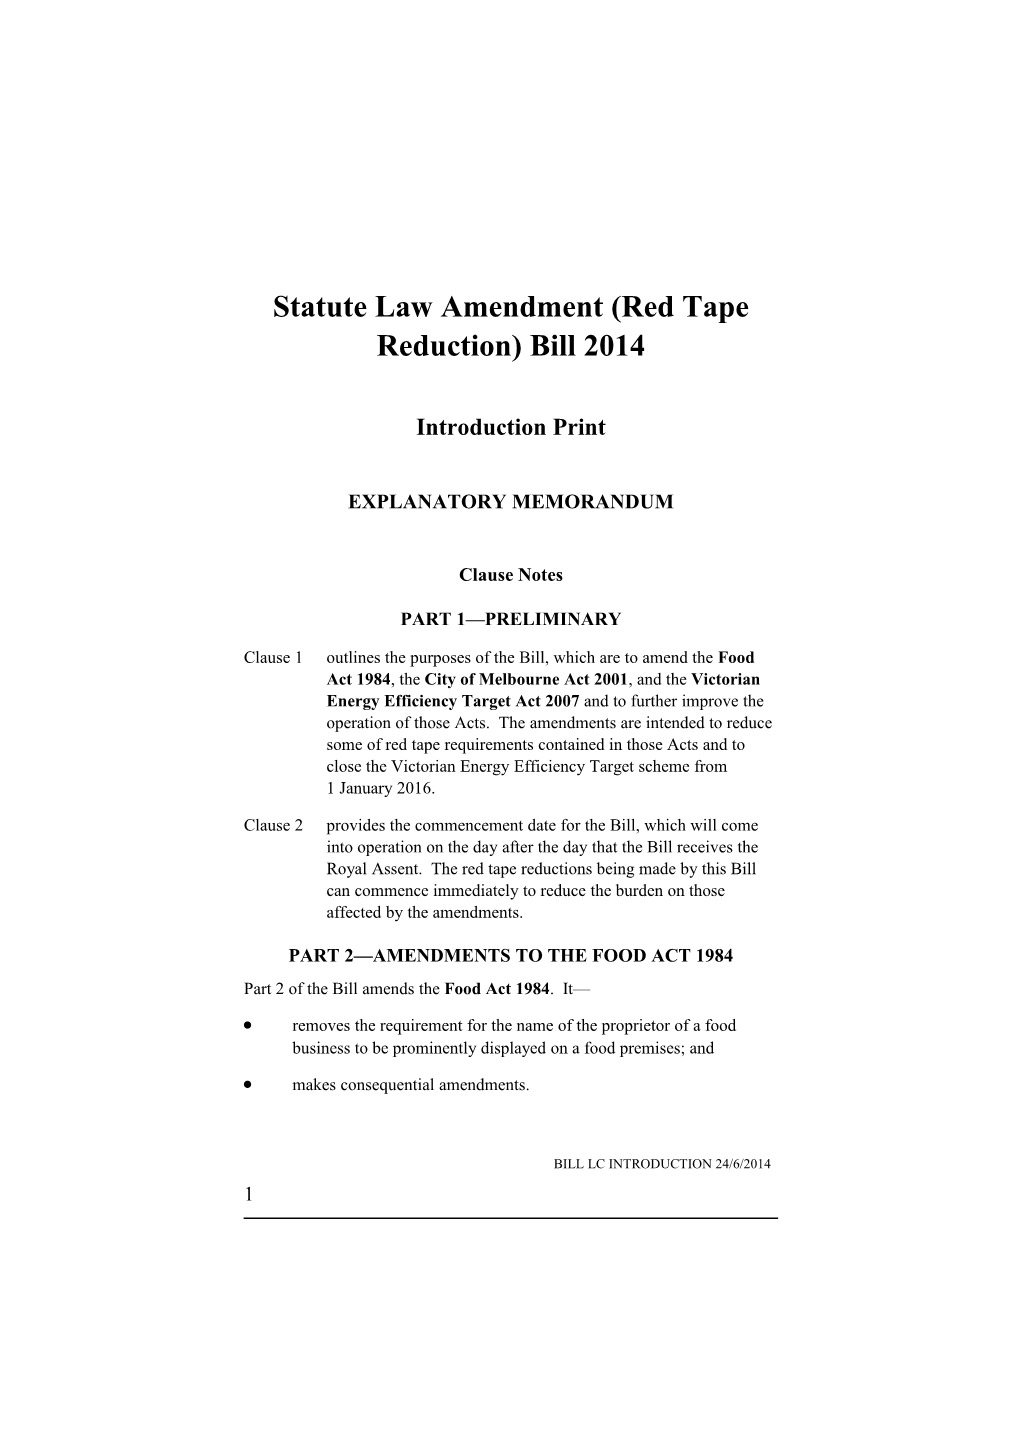 Statute Law Amendment (Red Tape Reduction) Bill 2014